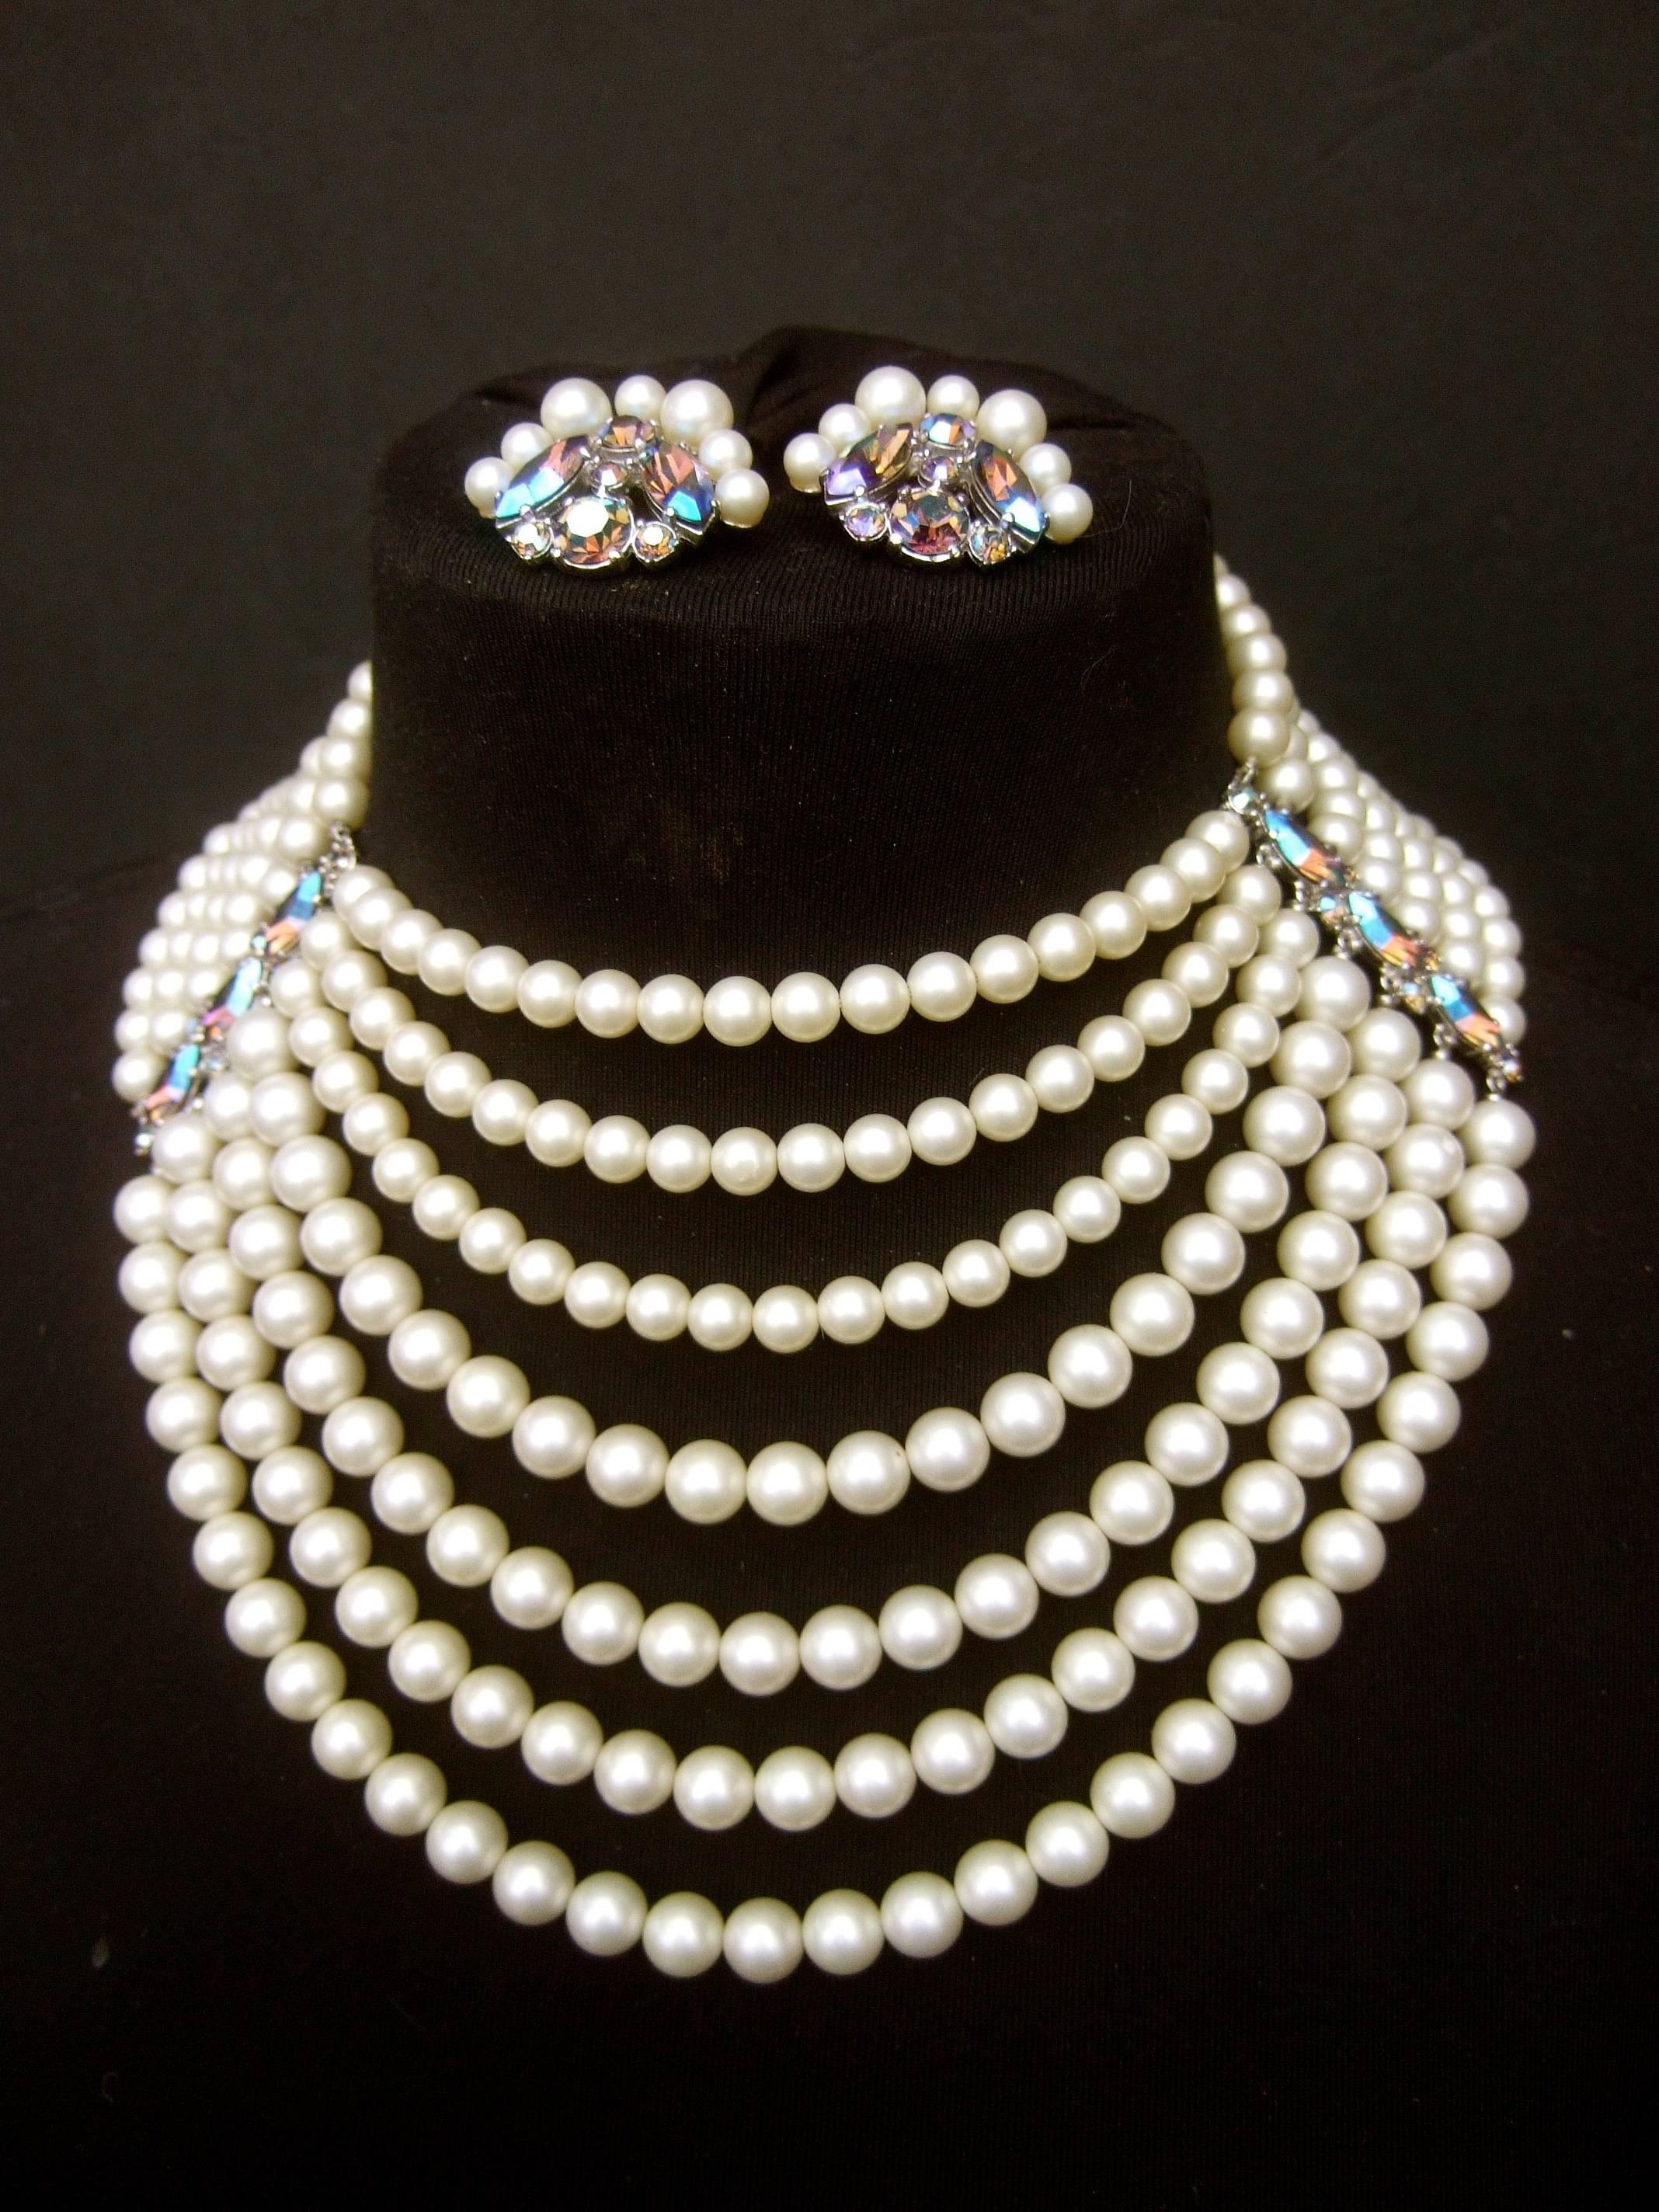 Schiaparelli dramatische Multi-Strang faux Perle Halskette - Ohrring-Set c 1960s
Die opulente faux Perle abgestuften sieben Strang Halskette ist
mit Harz-Emaille-Perlen entworfen. Die auffällige Trachtenkette ist verziert 
mit einer Leiste aus